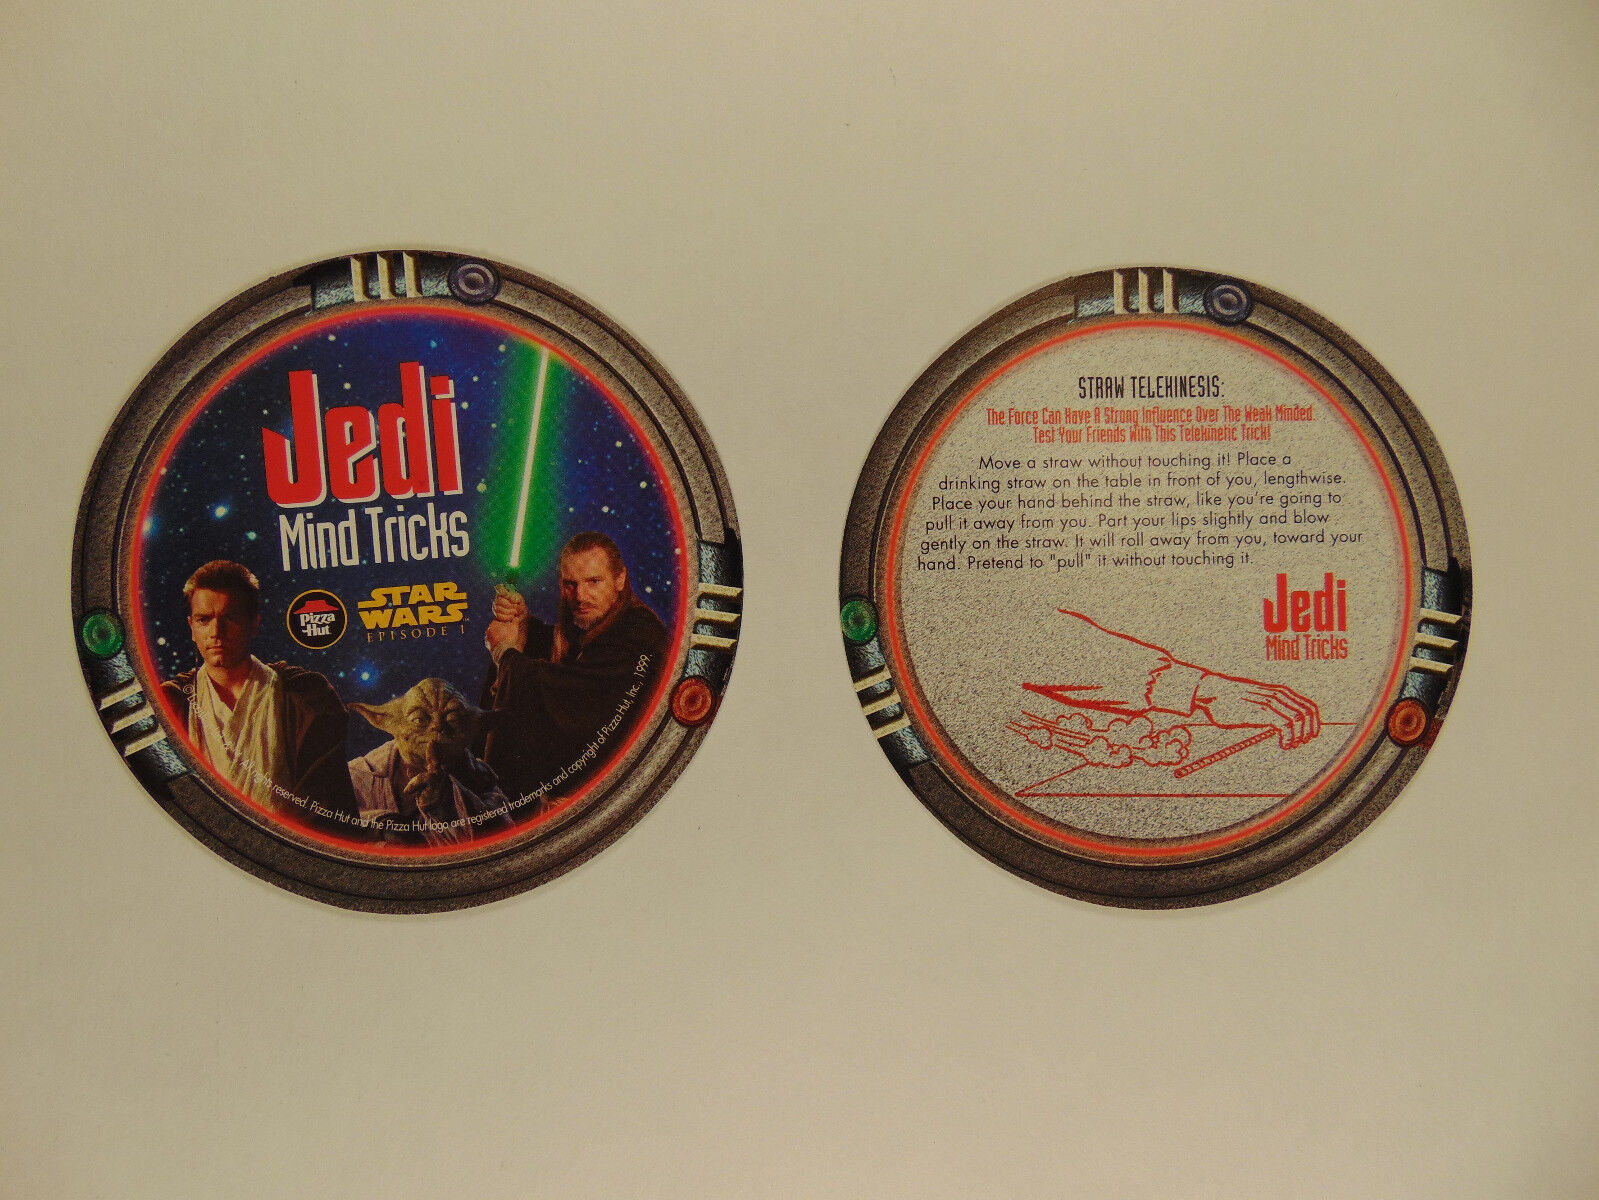 Star Wars episode 1 Pizza Hut tie-in coasters (Jedi Mind Tricks) 1999 (set of 5) Без бренда - фотография #4